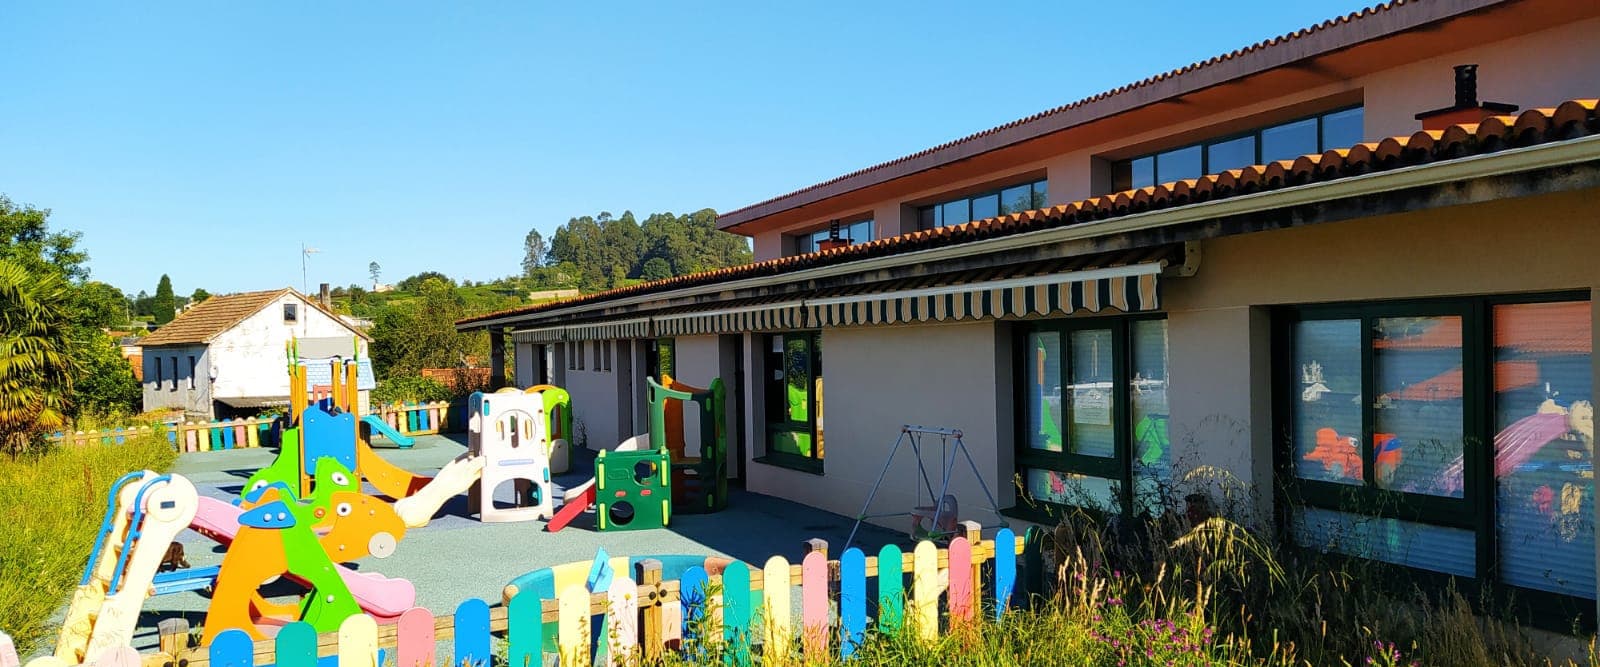 Escuela Infantil Municipal de Bergondo - Escuela infantil en Bergondo para niños de entre 3 meses y 3 años